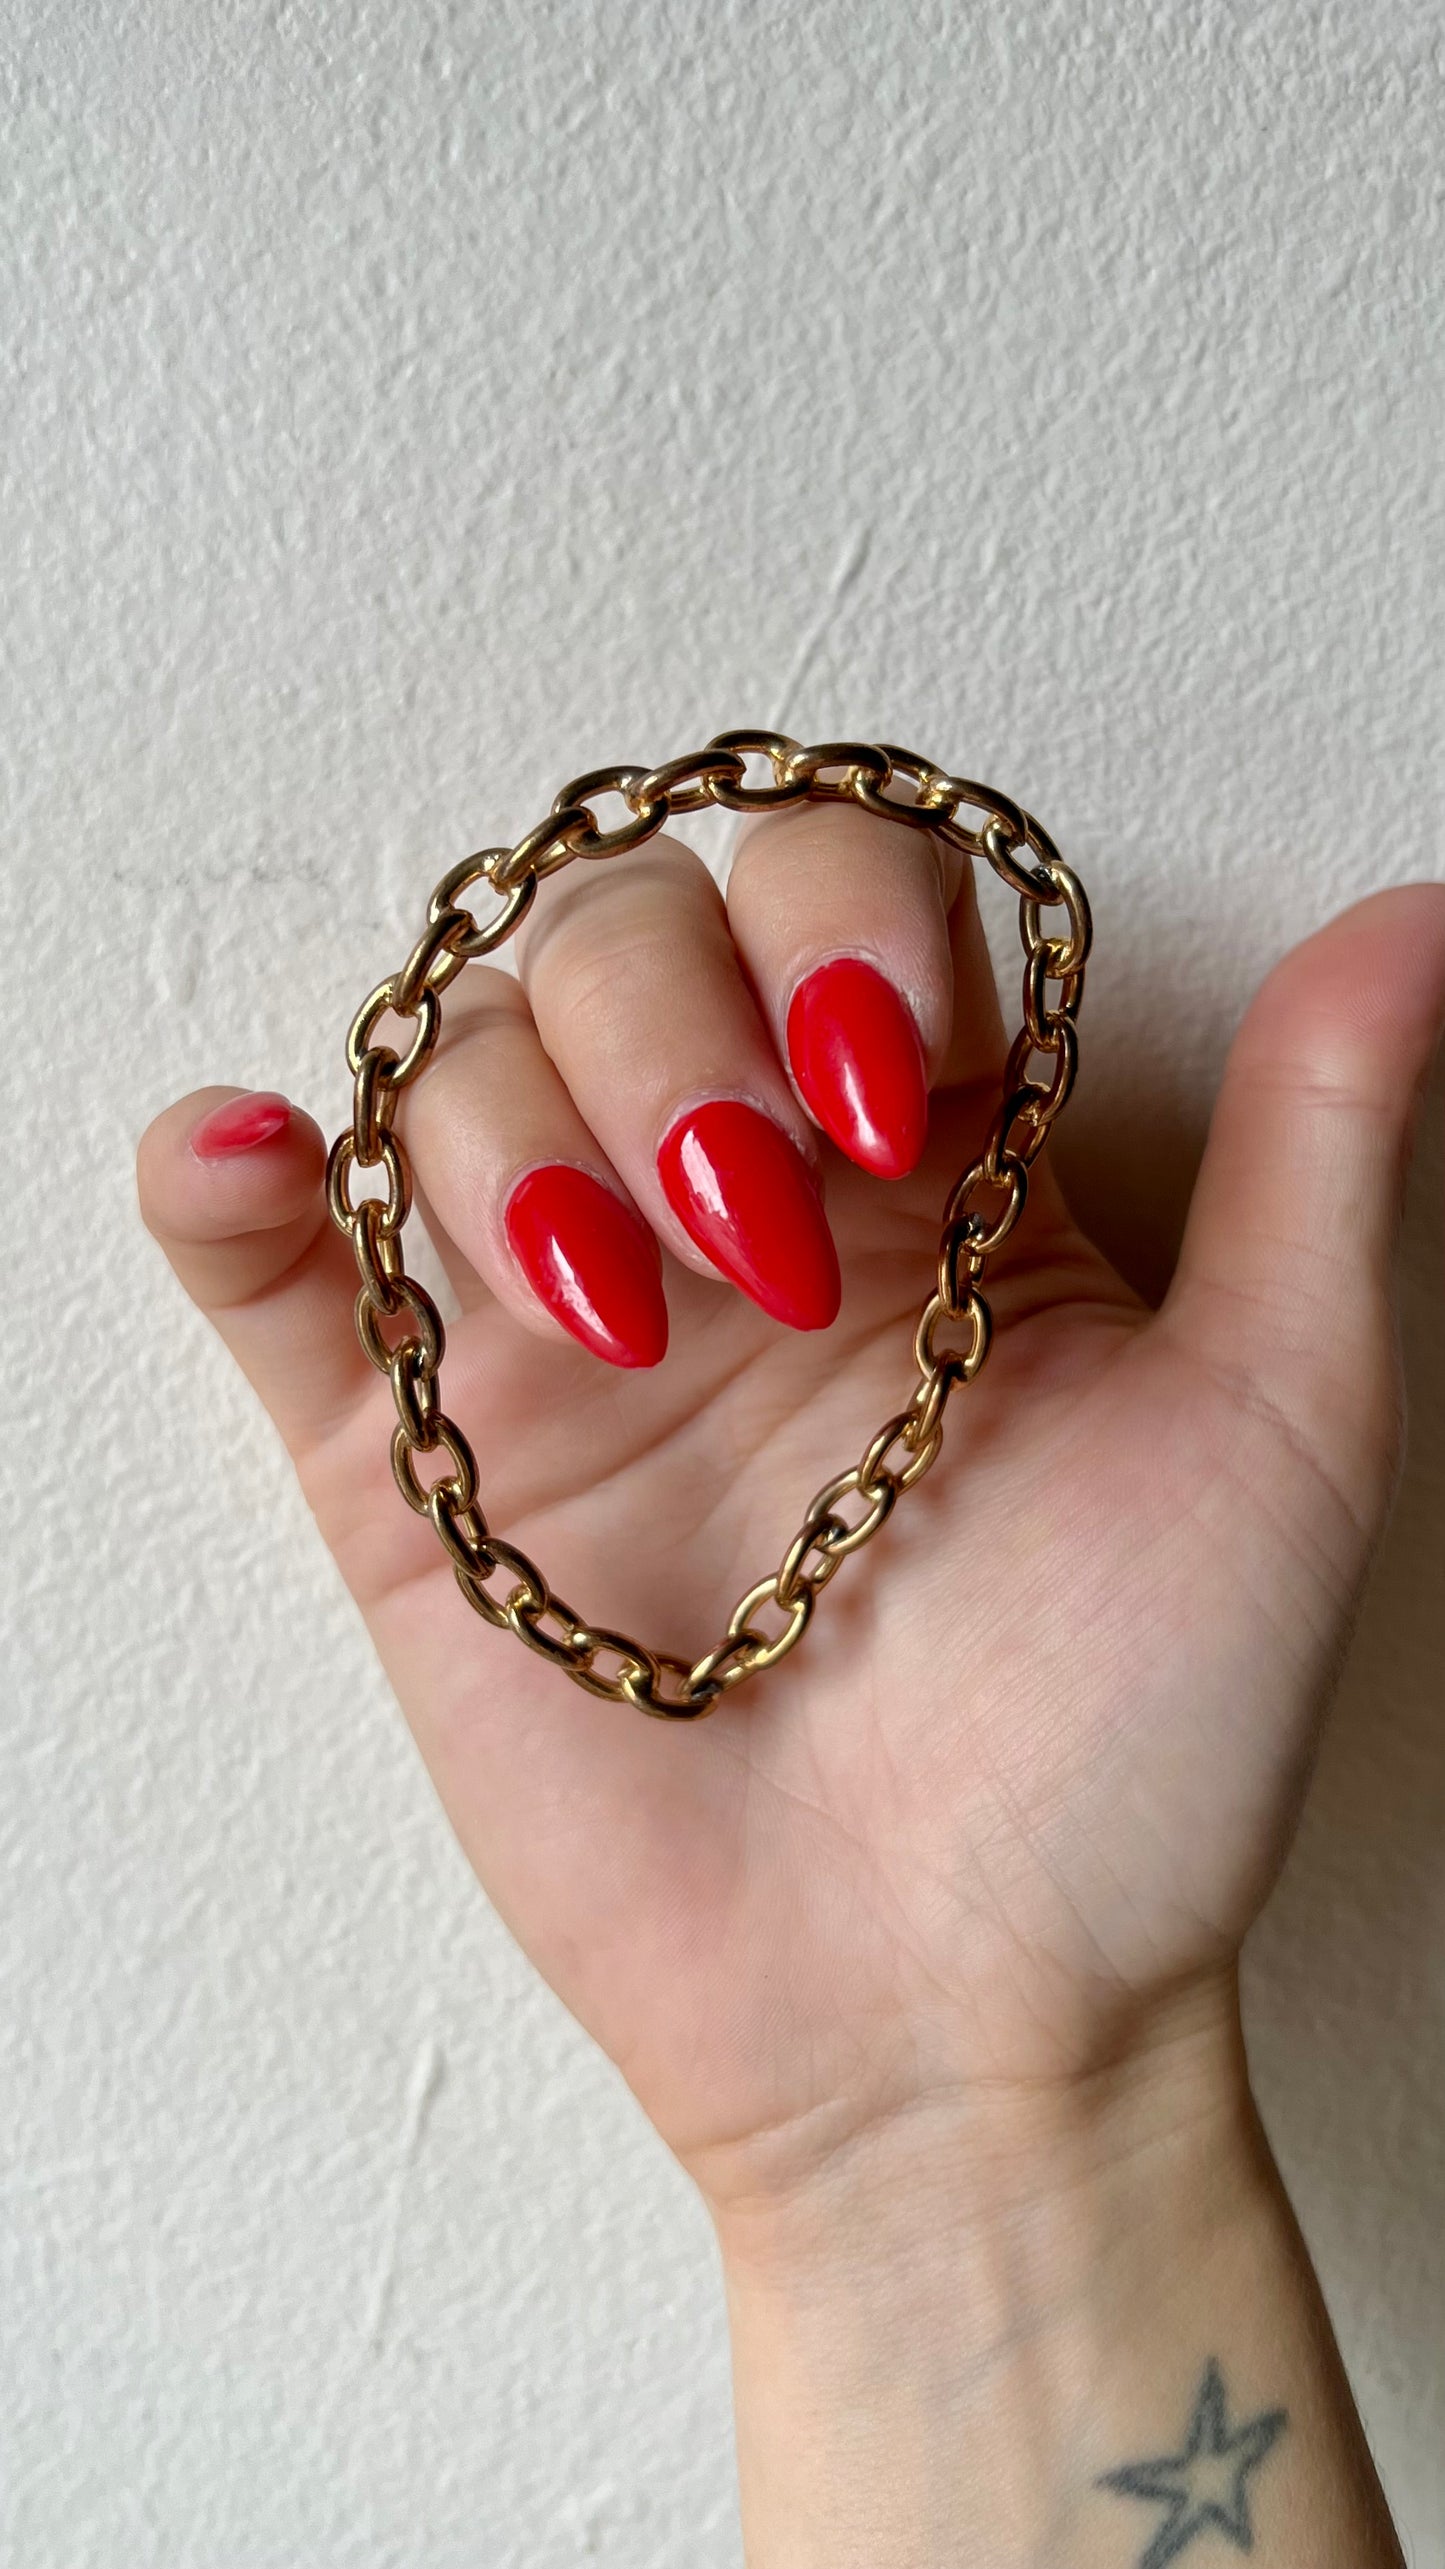 Goldtone Chainlink Bracelet